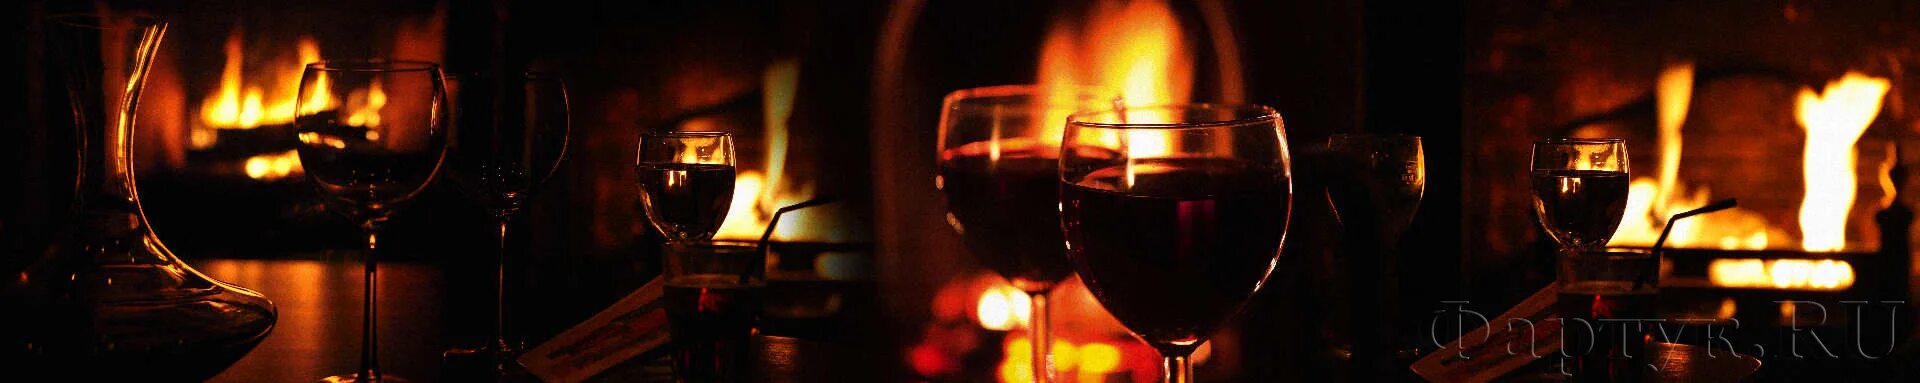 Бокал вина на фоне огня. Бокал с вином на фоне камина. Бокал на фоне огня. Вино на фоне костра. Бокал вина огонь